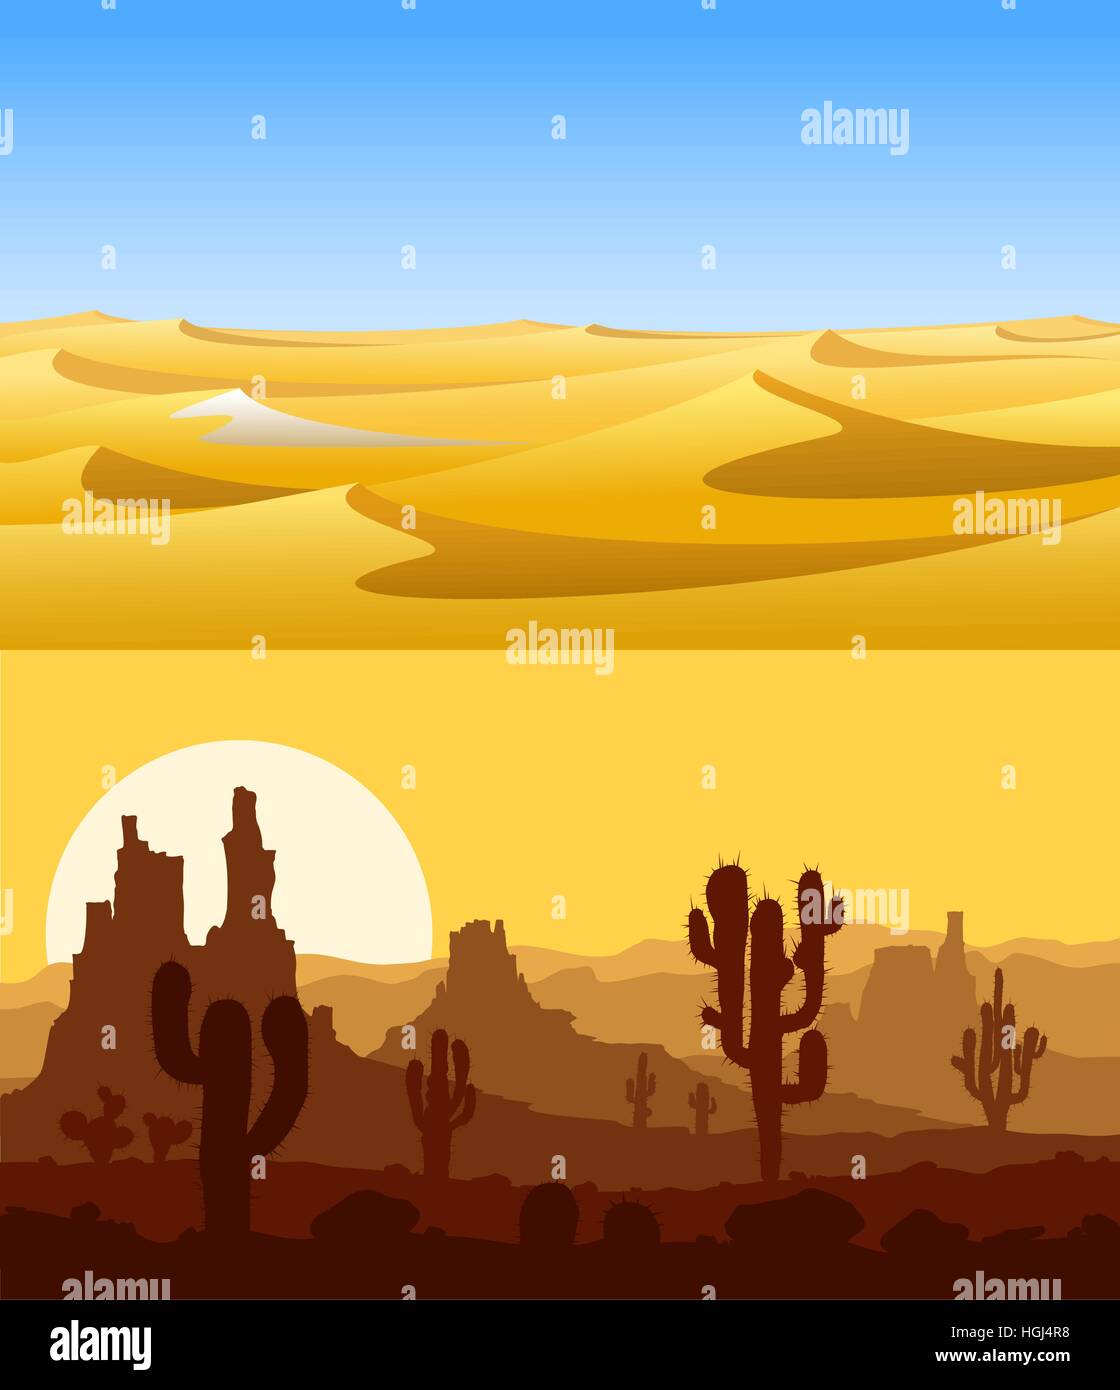 Paysages désertiques vector set. Illustration de Vecteur